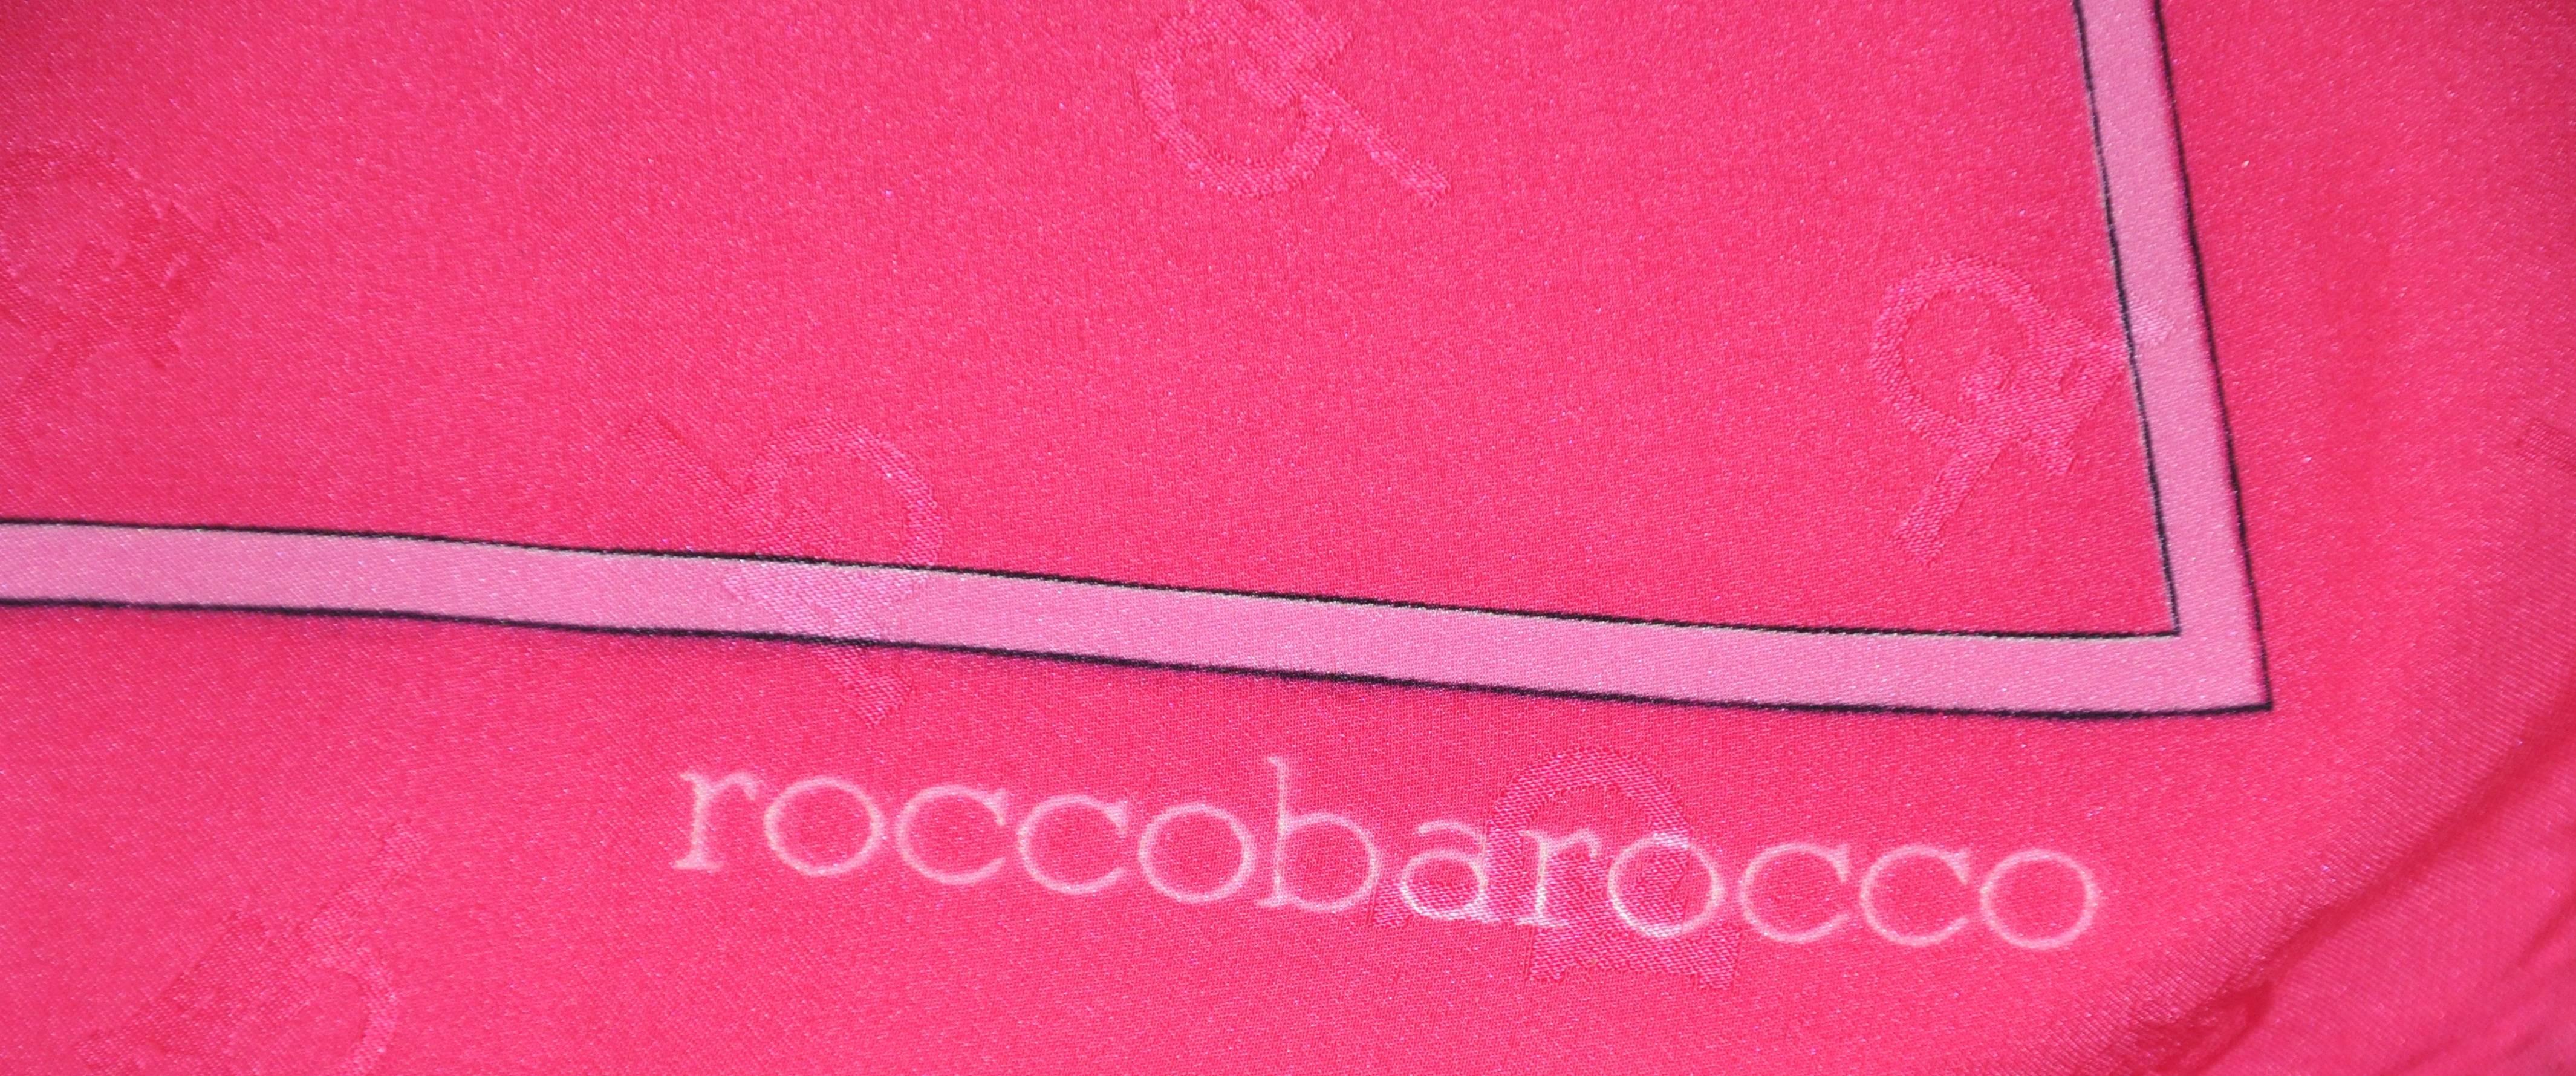 Coccobarocco Bold Vivid Fuchsia Monogramm Seidenkrepp di Chine Schal (Pink) im Angebot